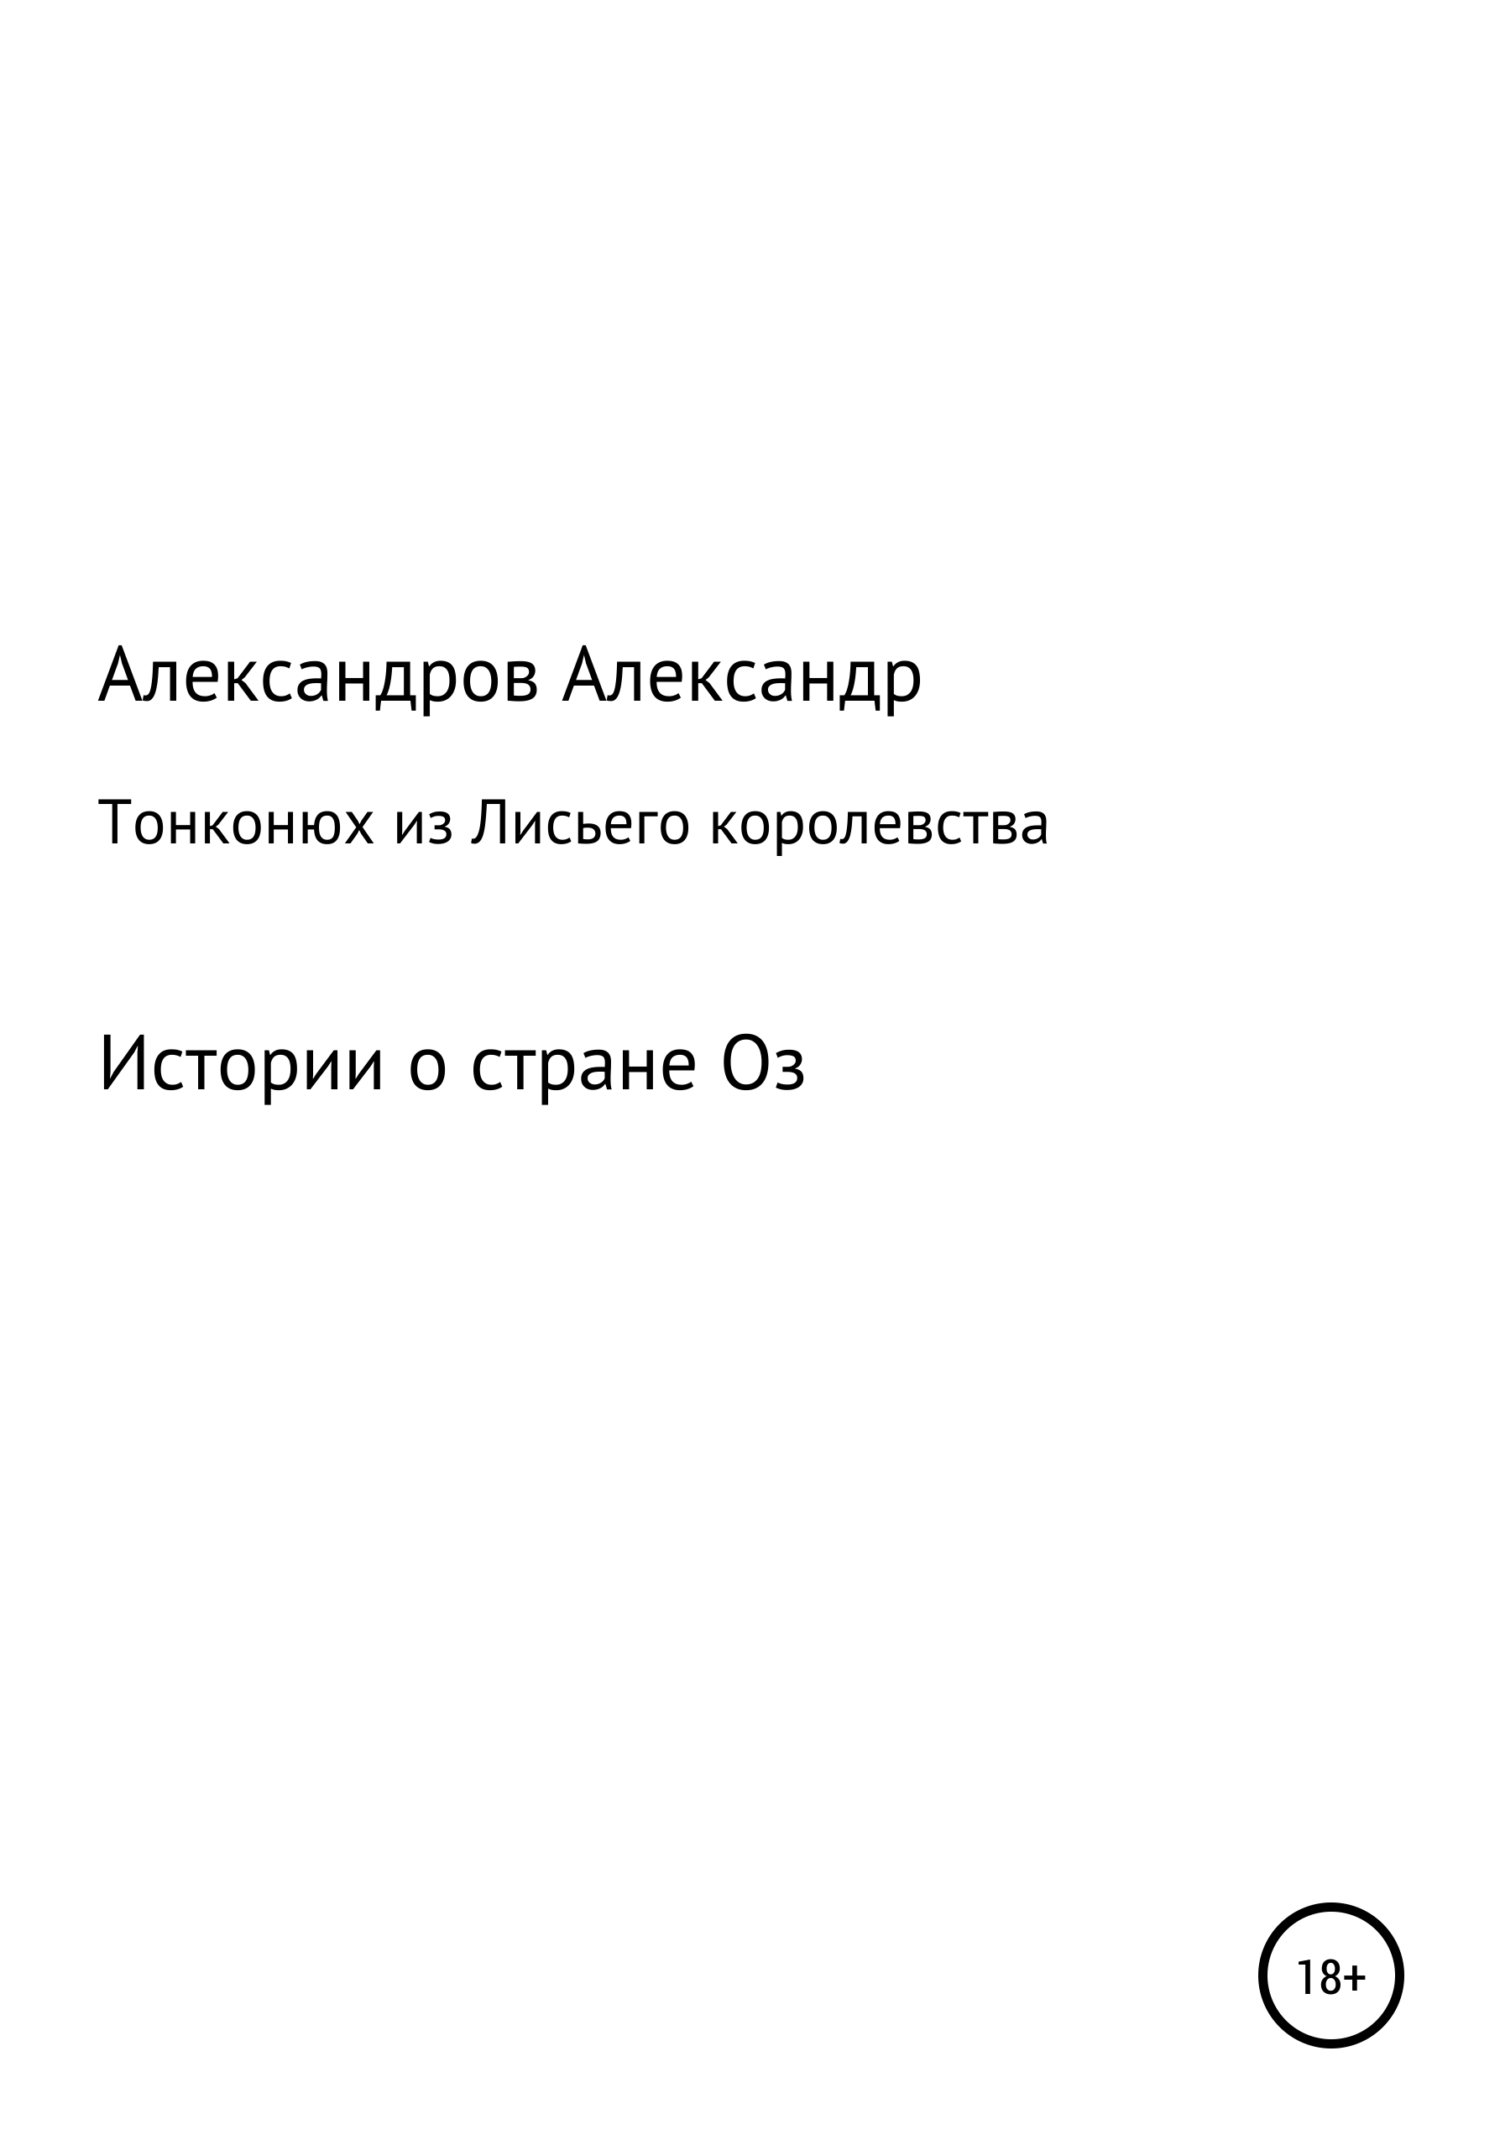 Тонконюх из Лисьего королевства - Александр Александрович Александров